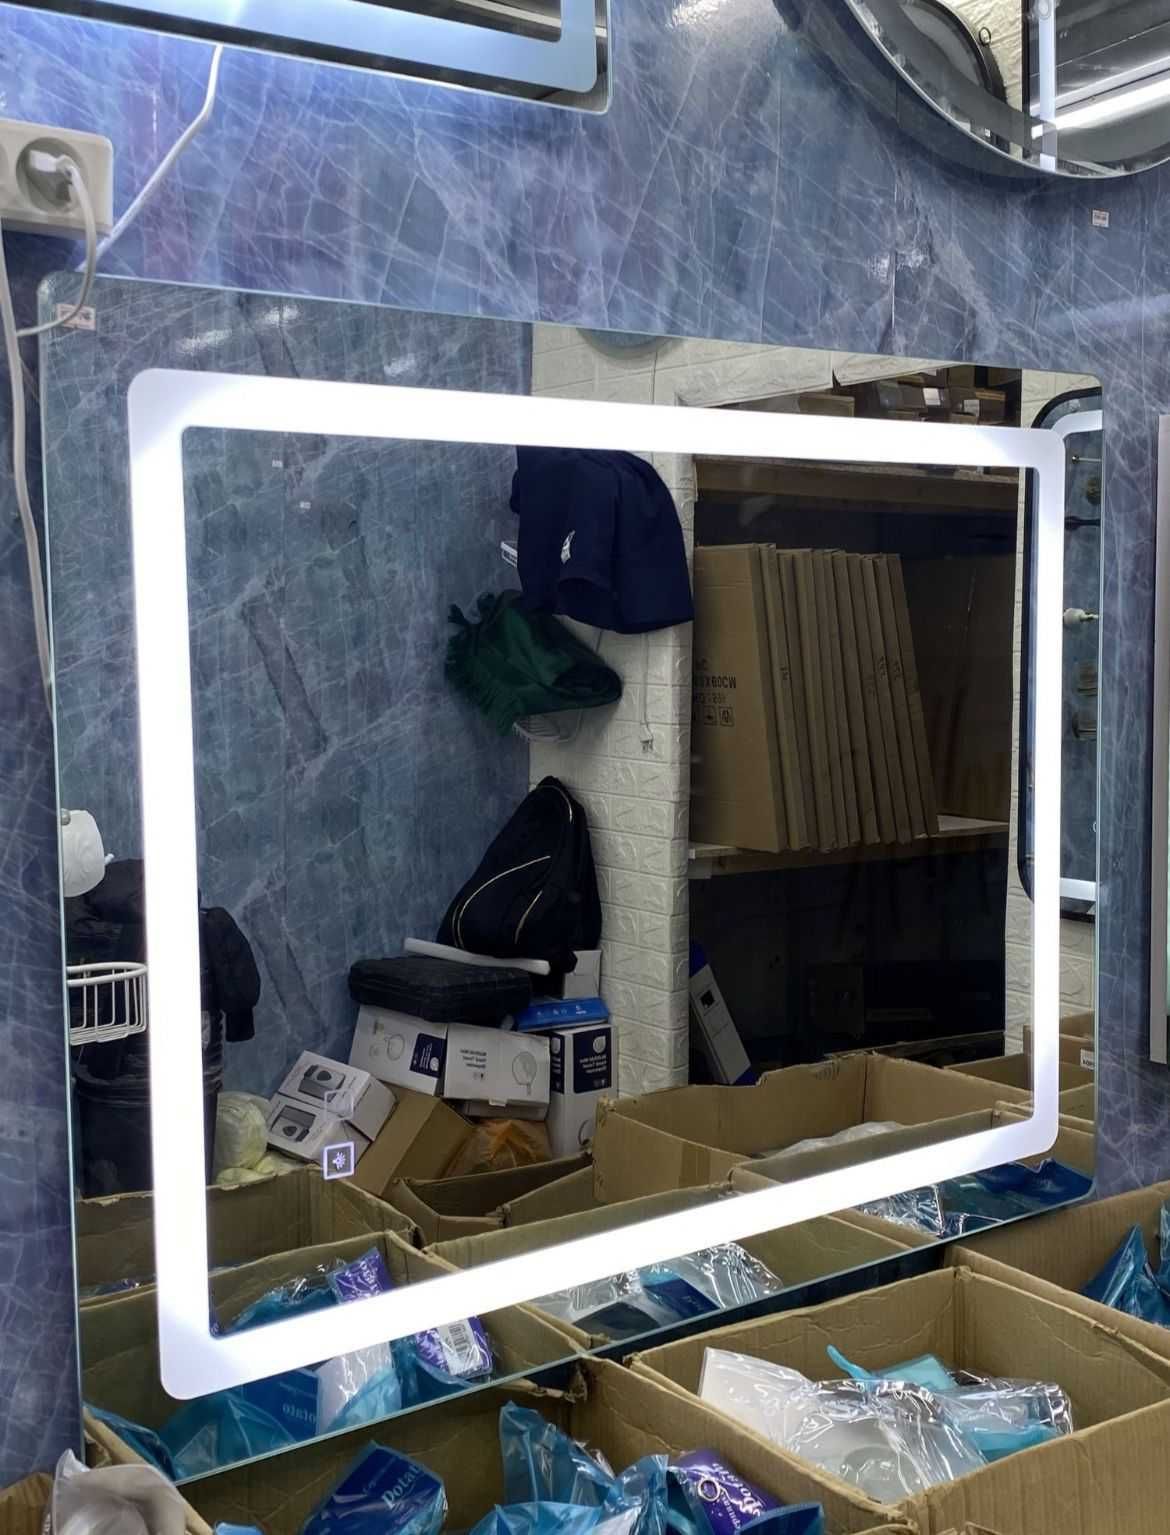 лед зеркало, зеркало для ванной комнаты, зеркало с подсветкой!